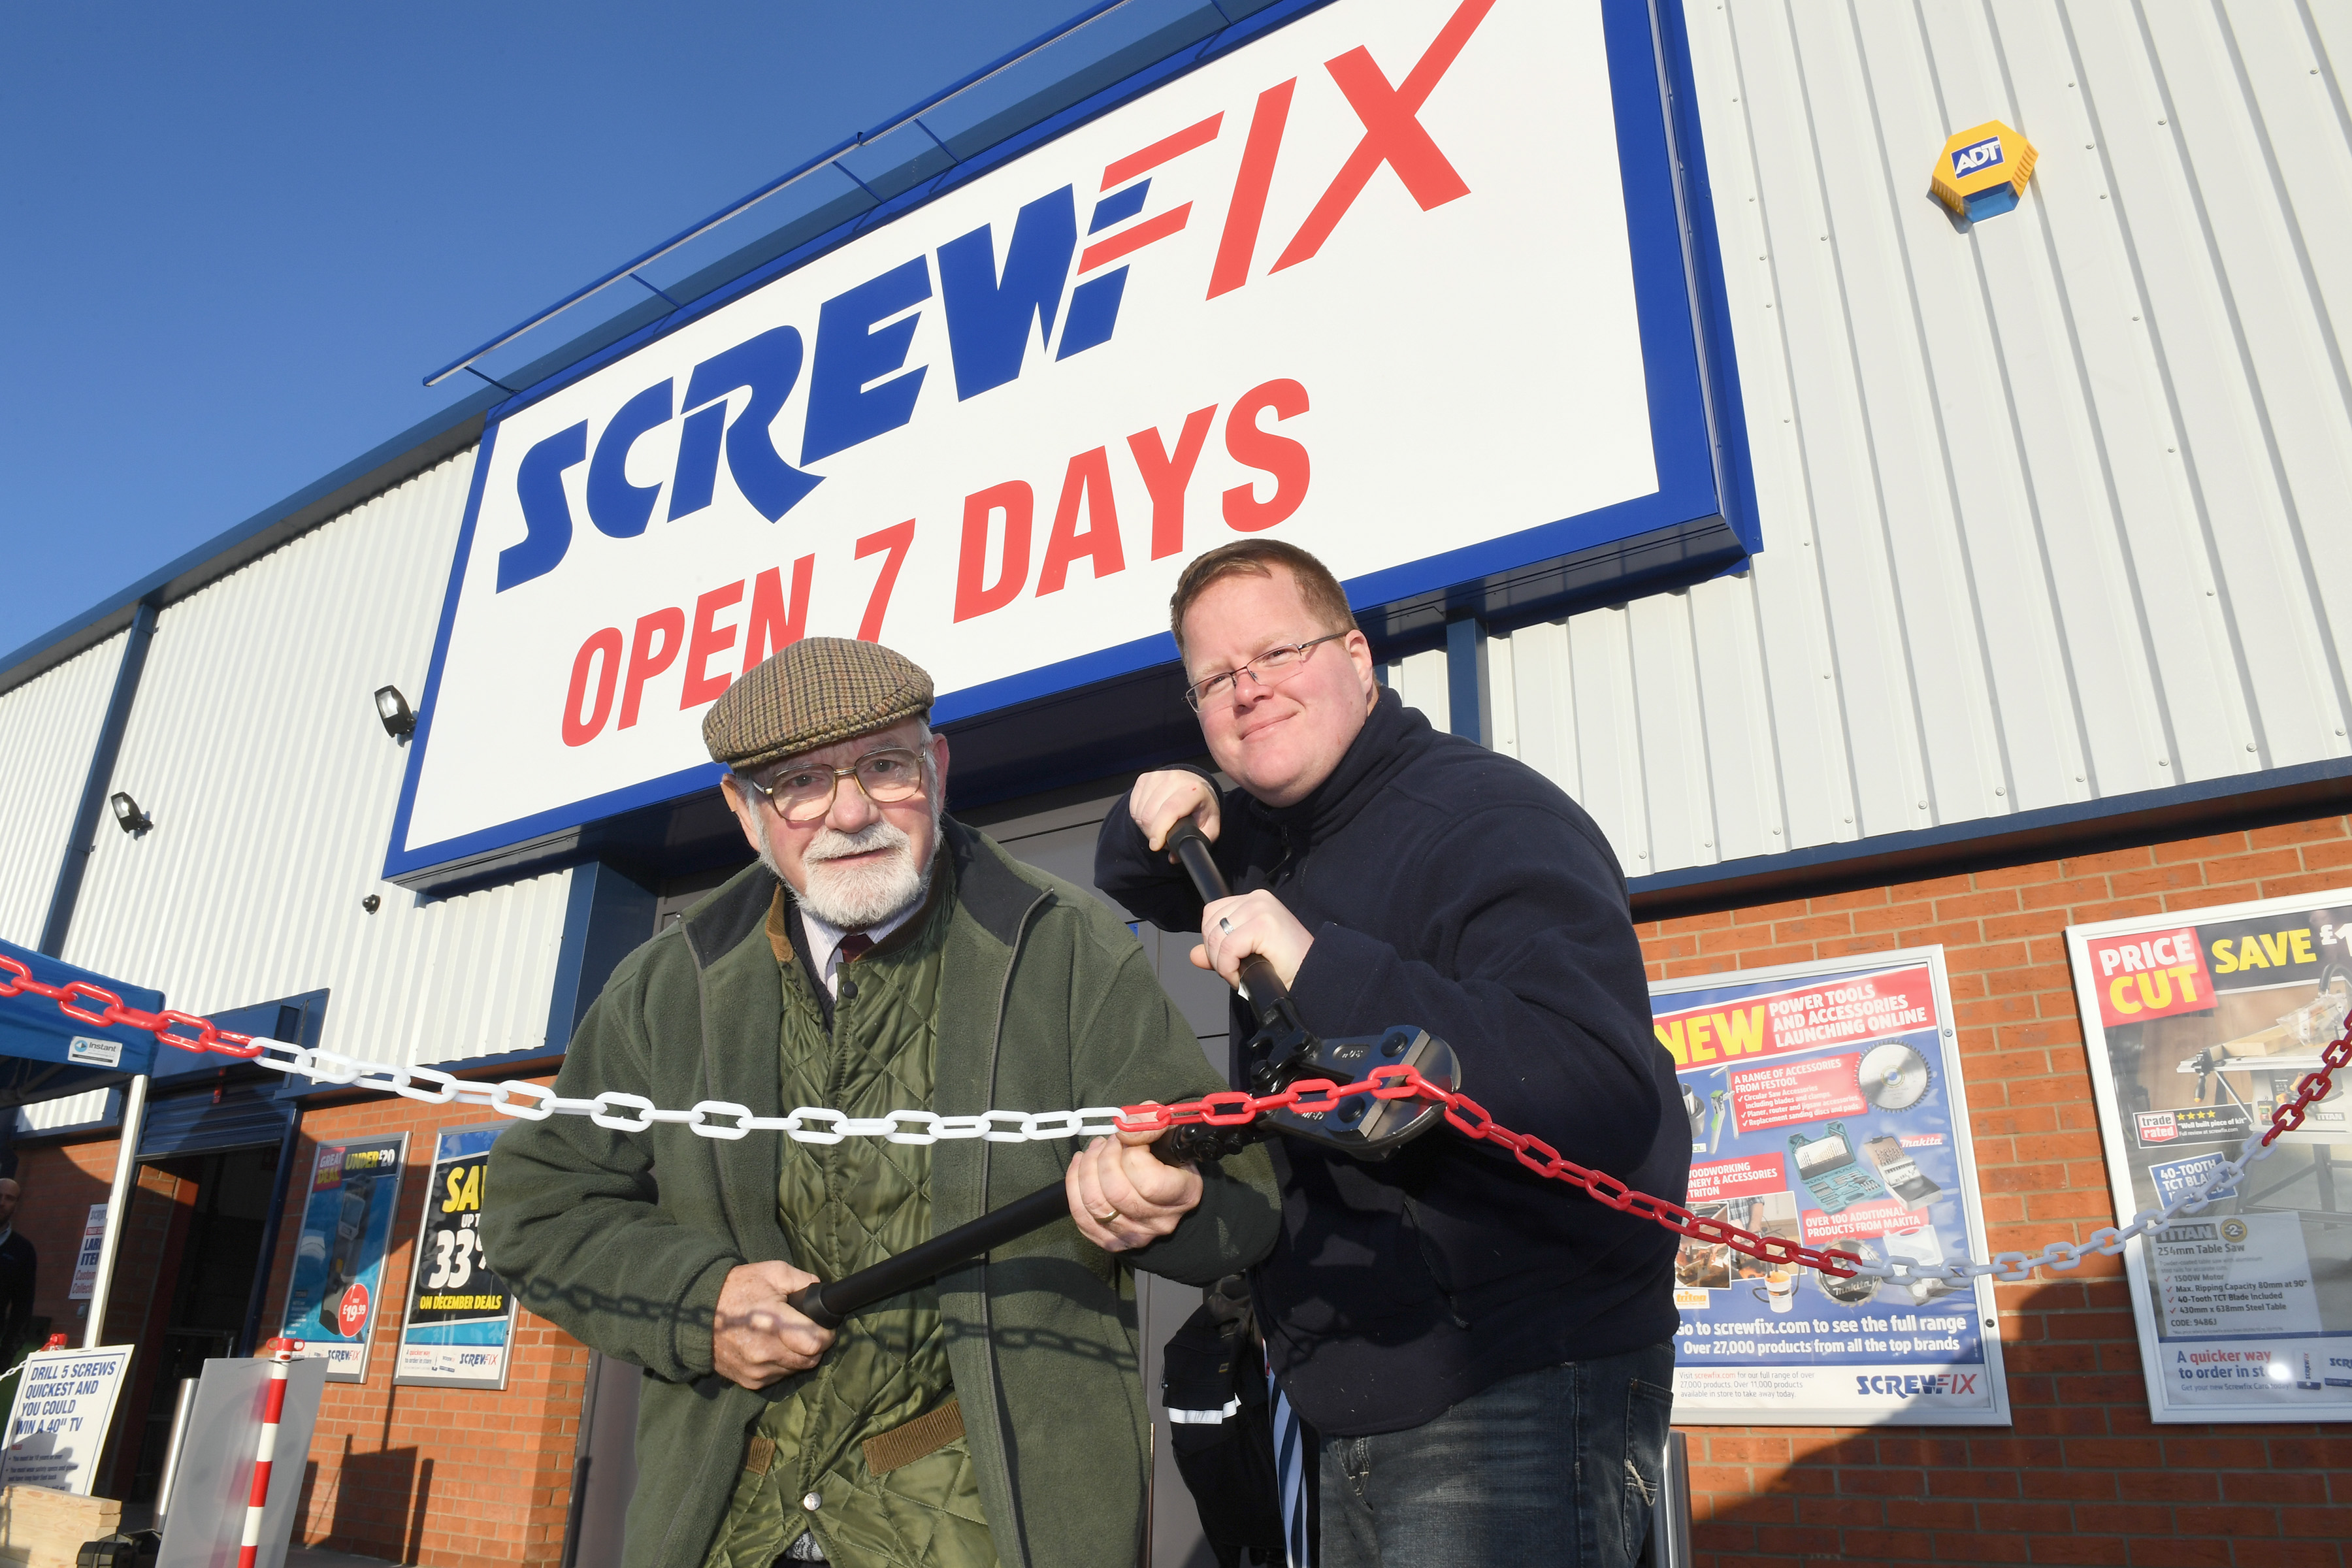 Screwfix opens its doors in Skegness